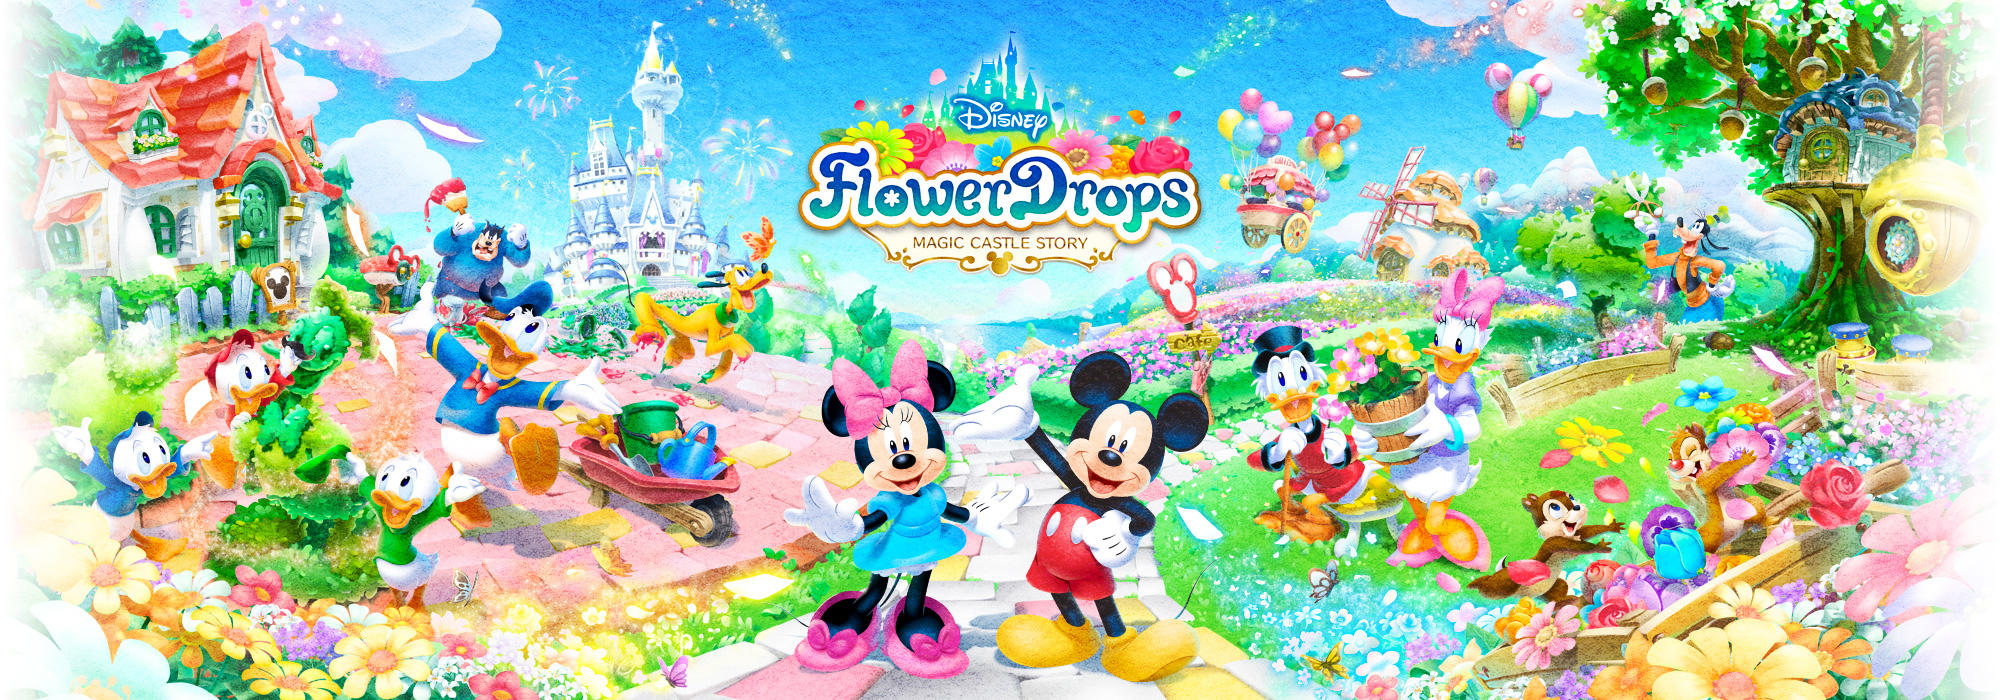 Banner of Disney Flower Menggugurkan Kisah Magic Castle 